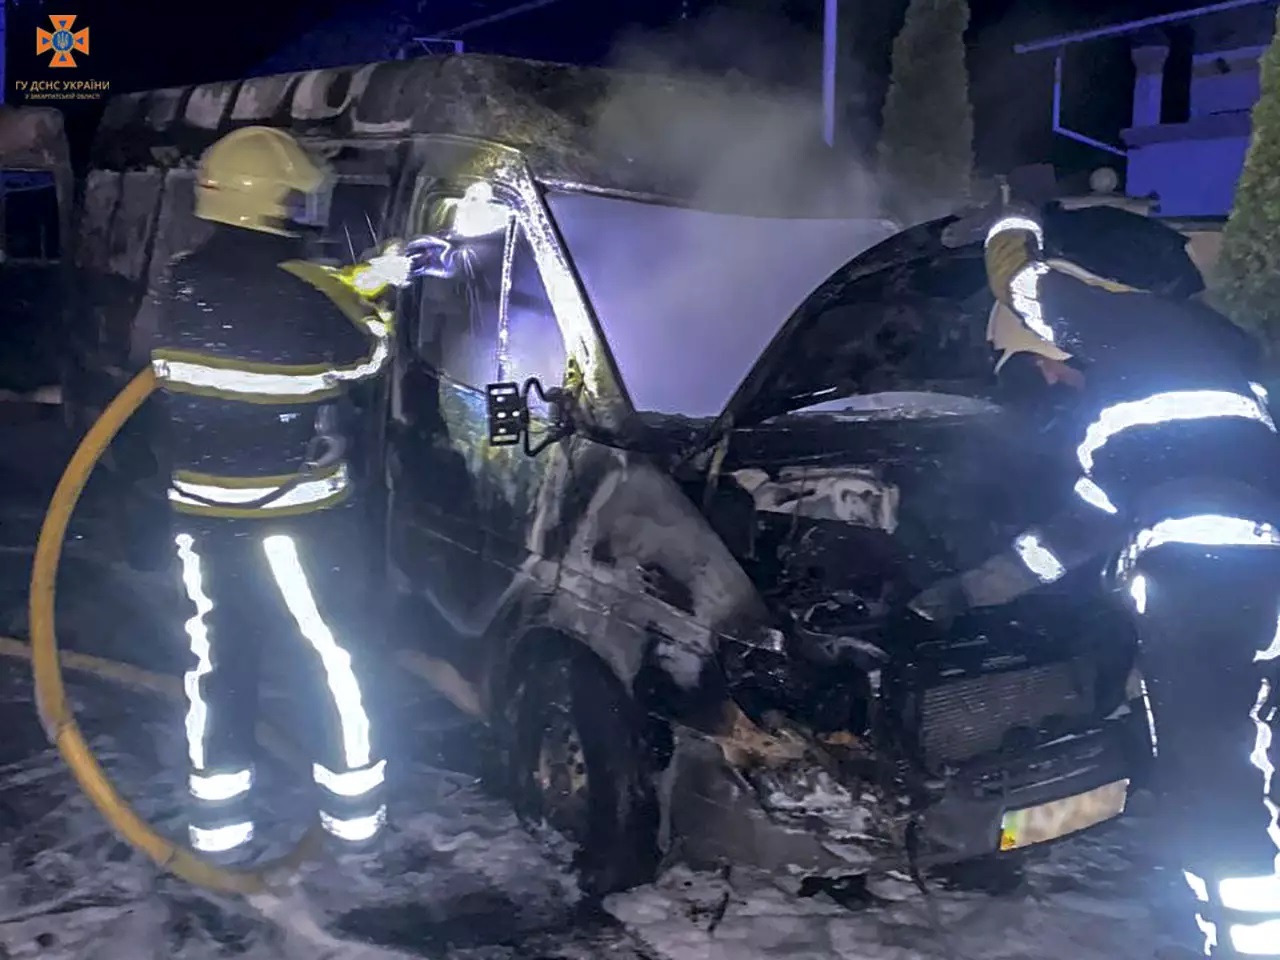 Пожежу мікроавтобуса в Ключарках на Мукачівщині вночі з вікна побачив сам власник авто (ФОТО)